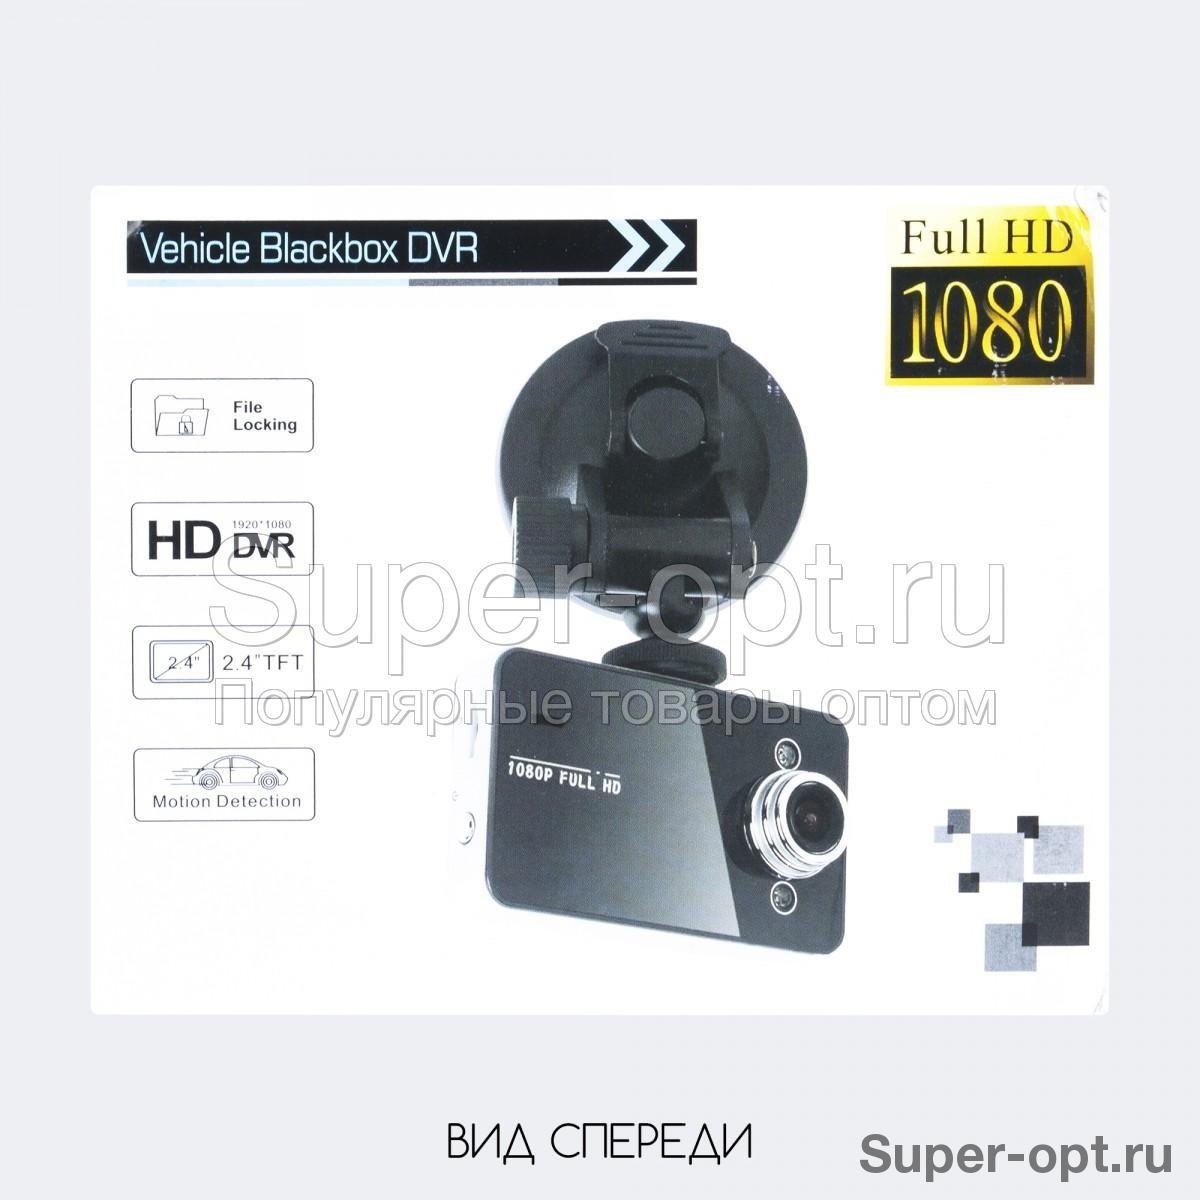 Видеорегистратор Vehicle Blackbox DVR Full HD 1080p